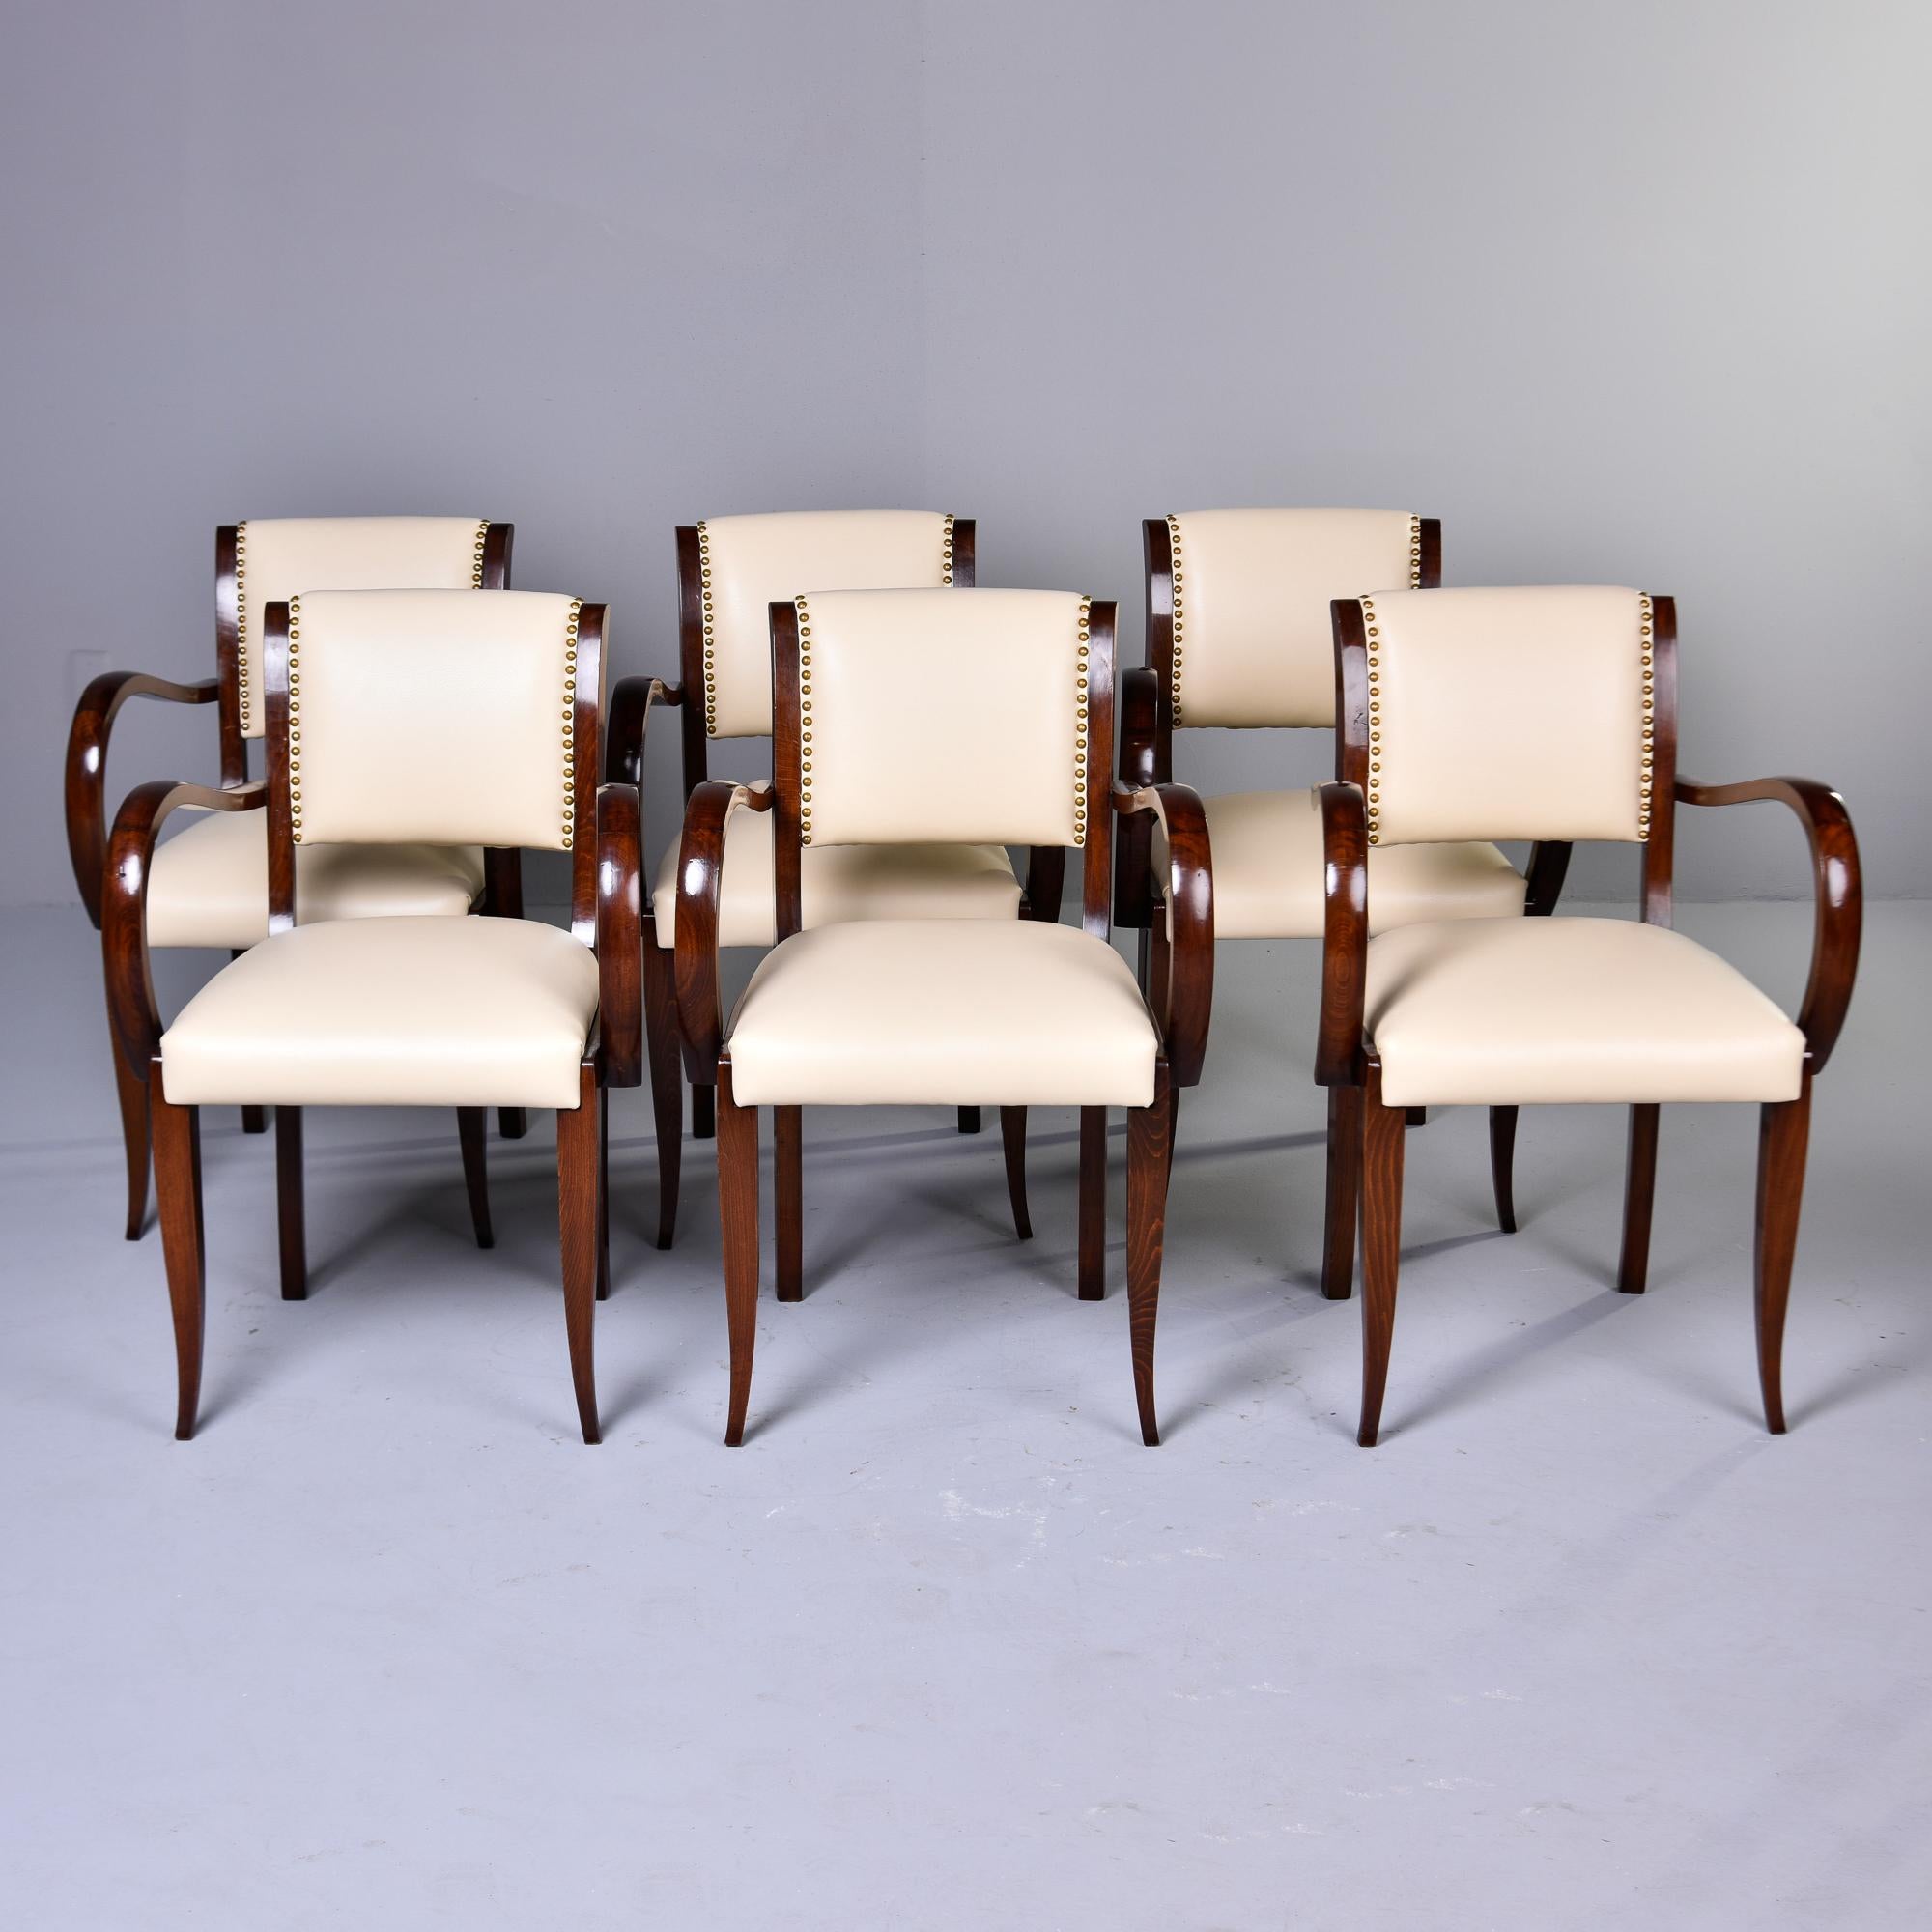 Trouvé en France, cet ensemble de six chaises date des années 1940. Les chaises ont un cadre en noyer teinté foncé, des pieds effilés et des accoudoirs aux courbes spectaculaires. Les sièges et dossiers rembourrés ont été retapissés dans un cuir